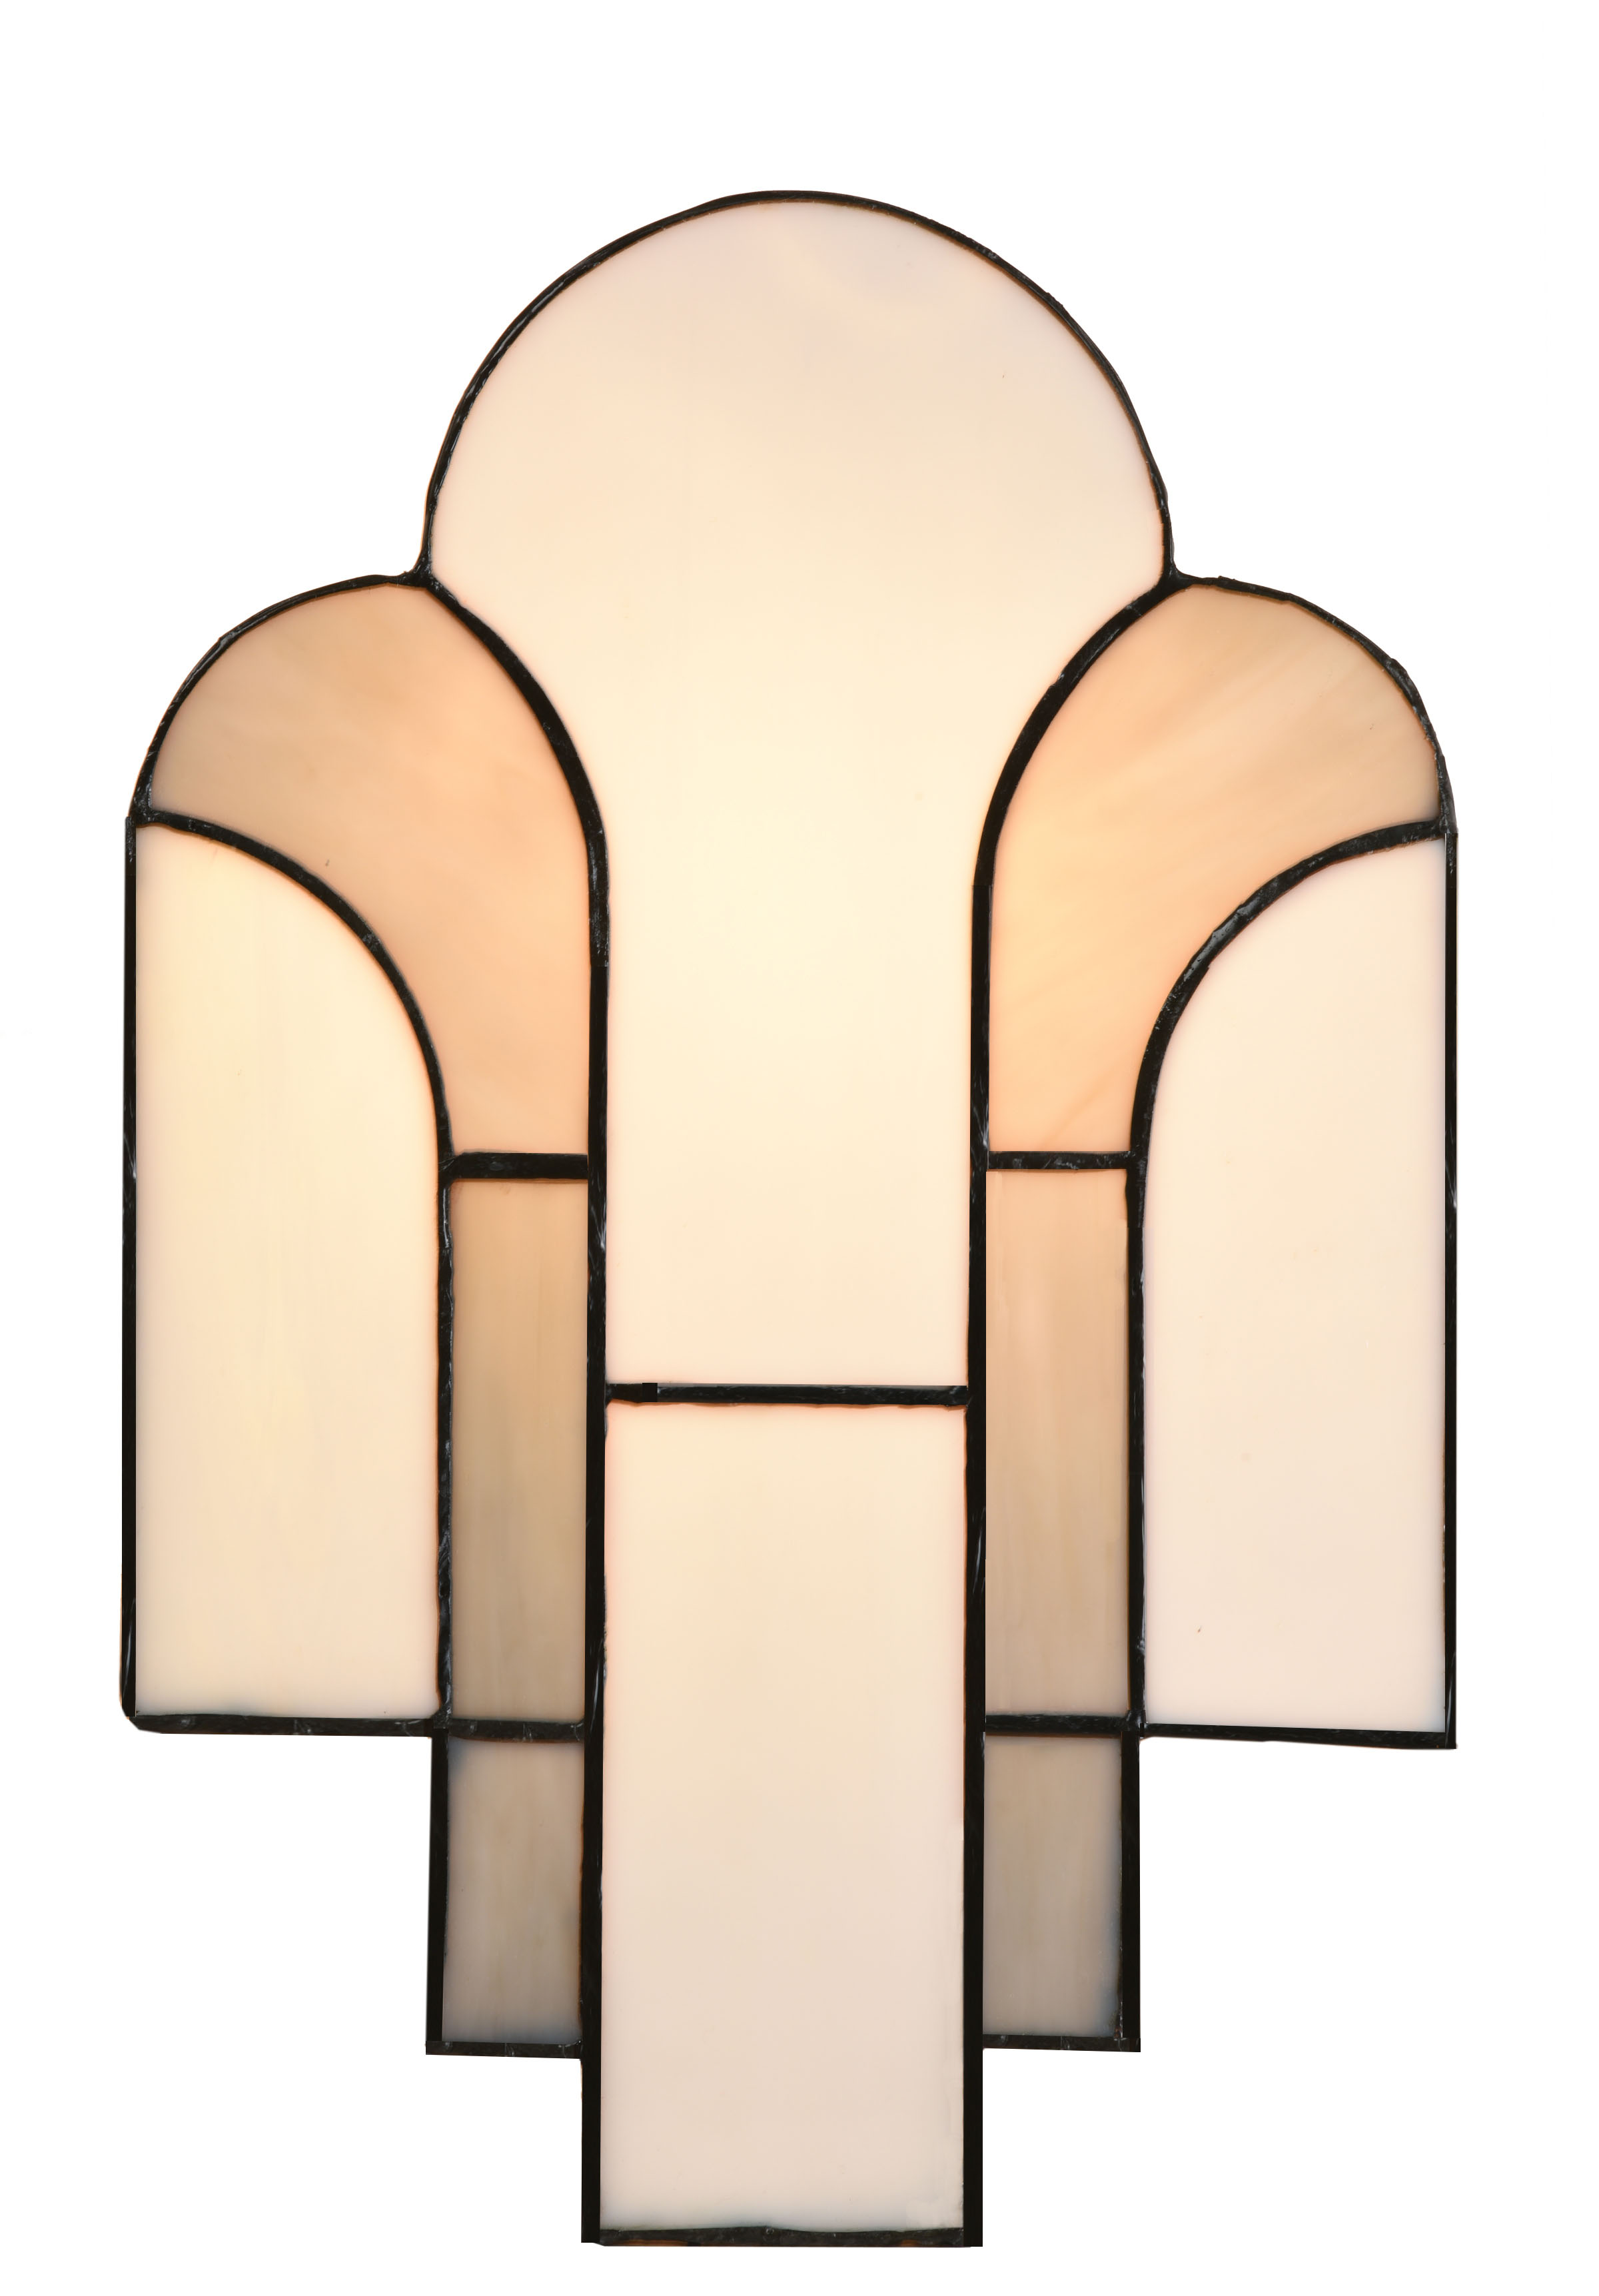 Soon available: the Tiffany Wall Lamp New York